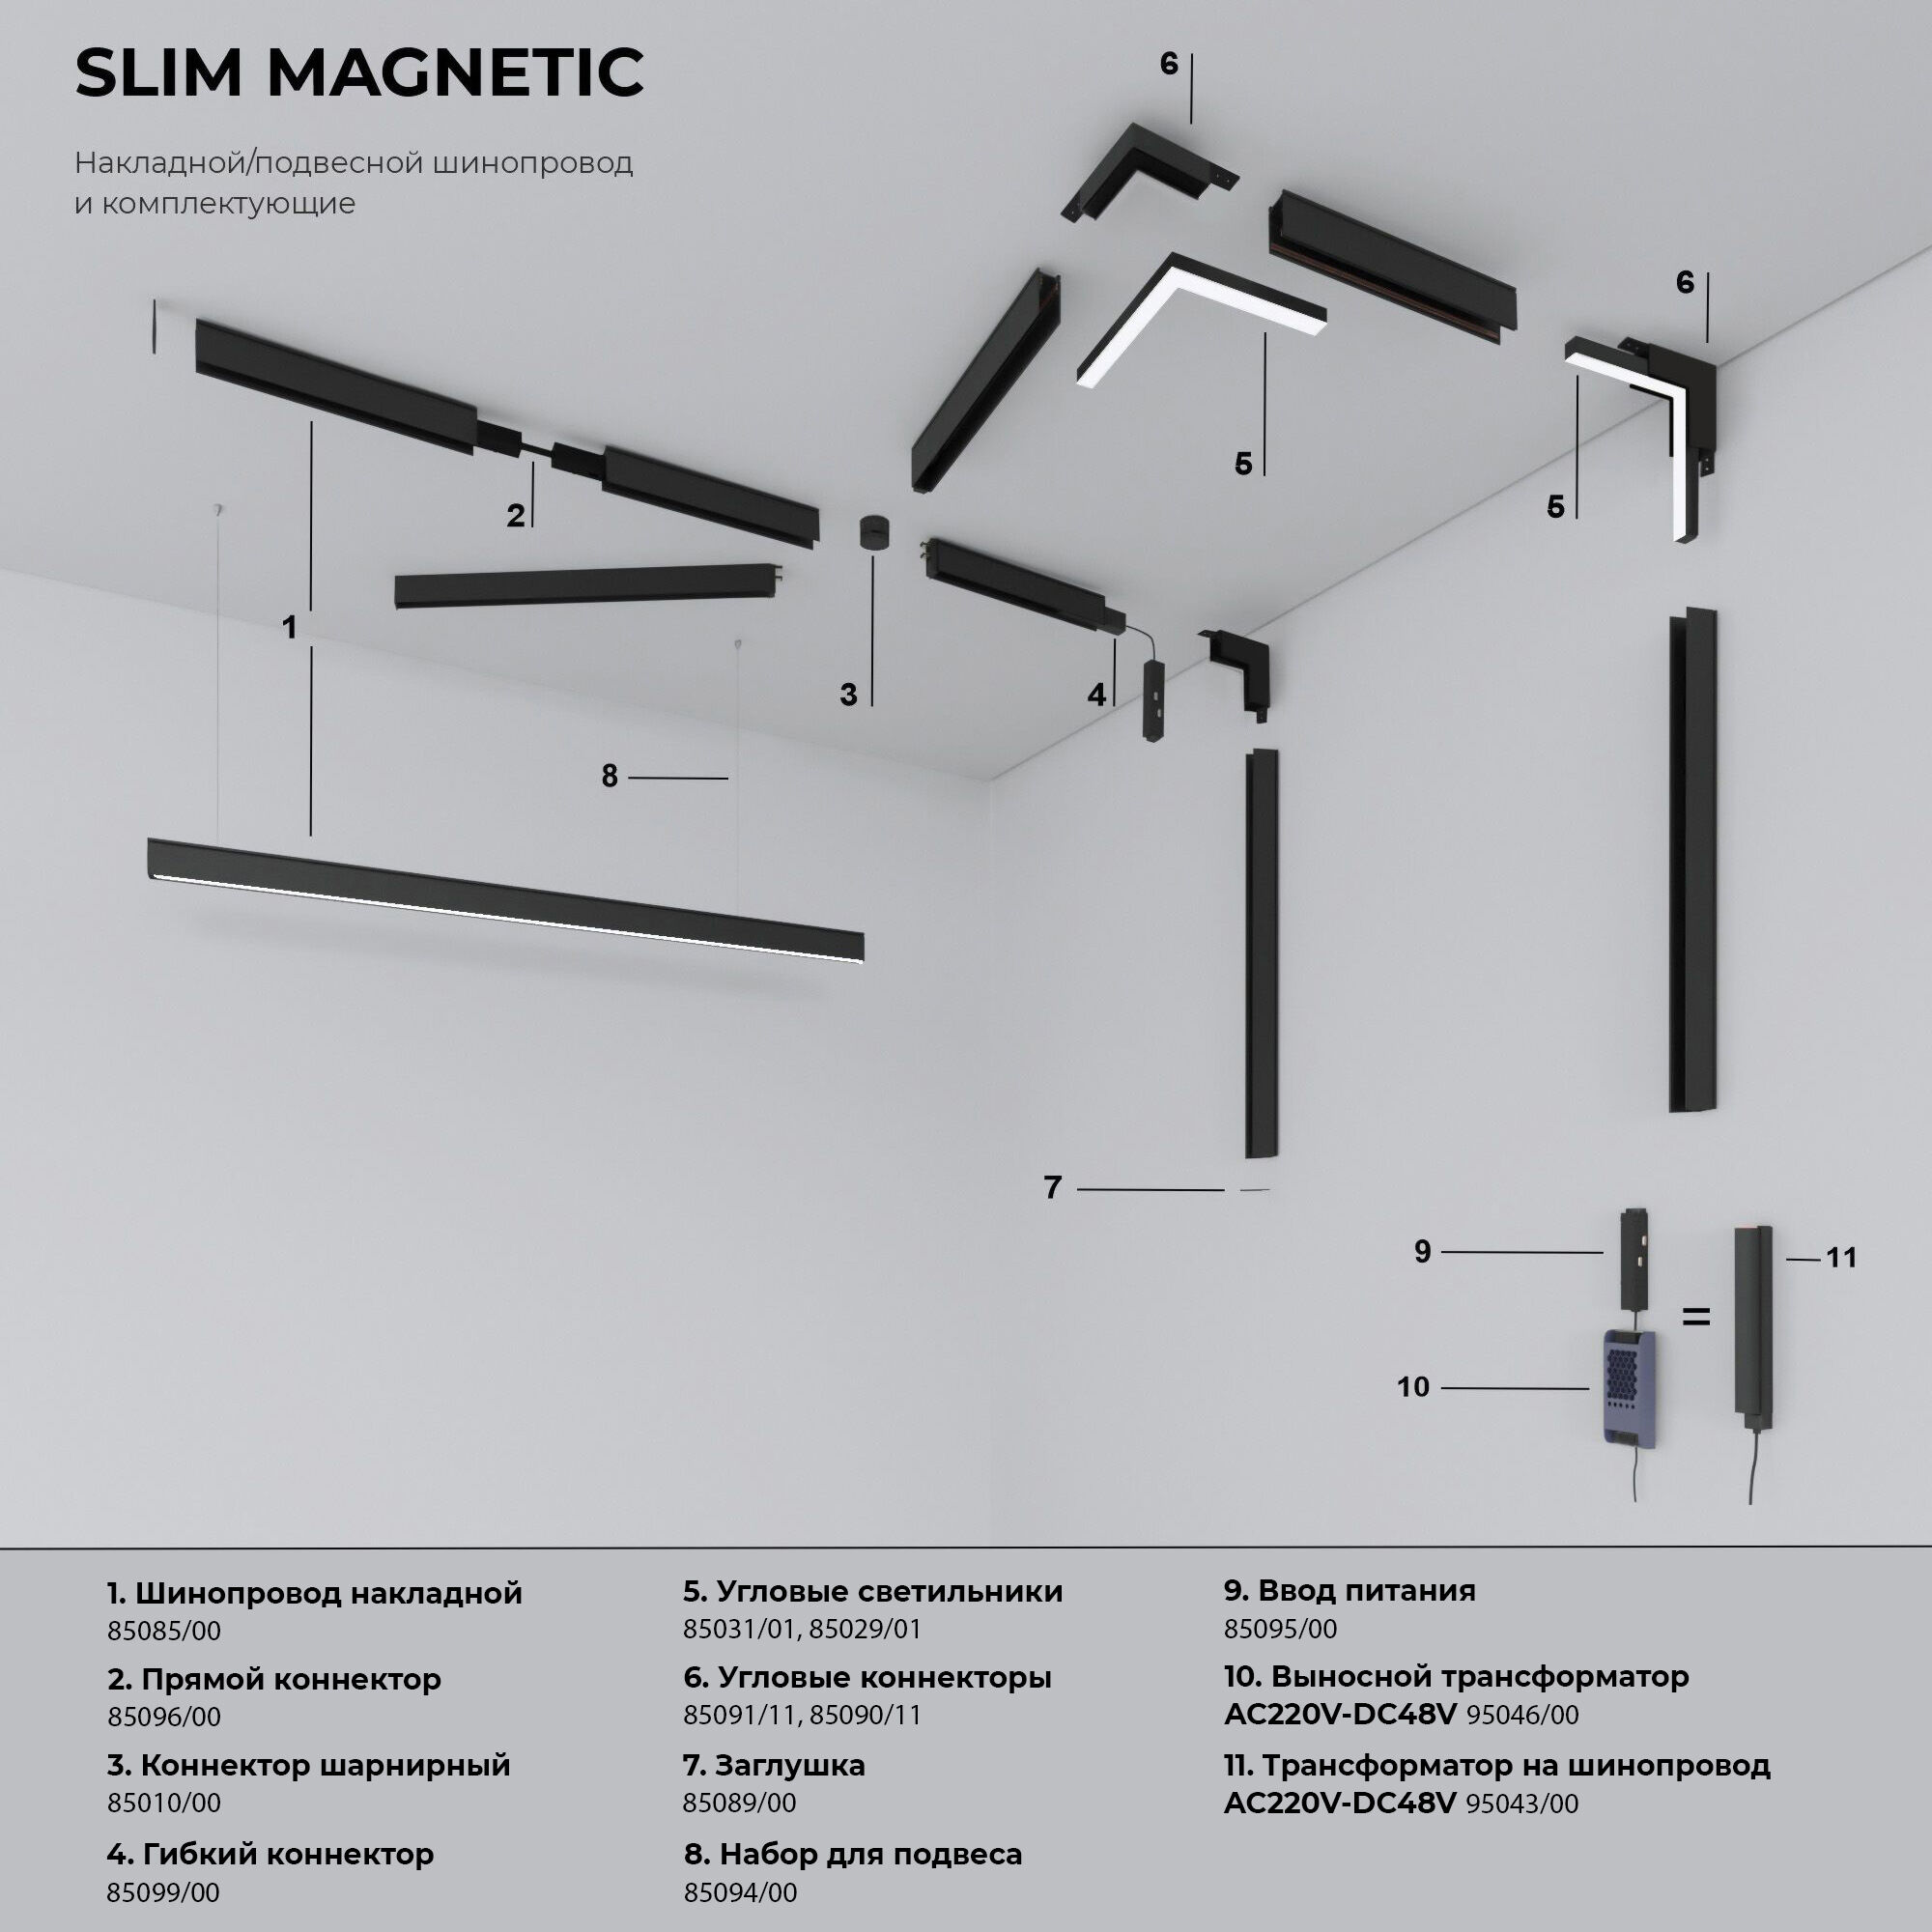 Slim Magnetic Блок питания 200W белый 95042/00